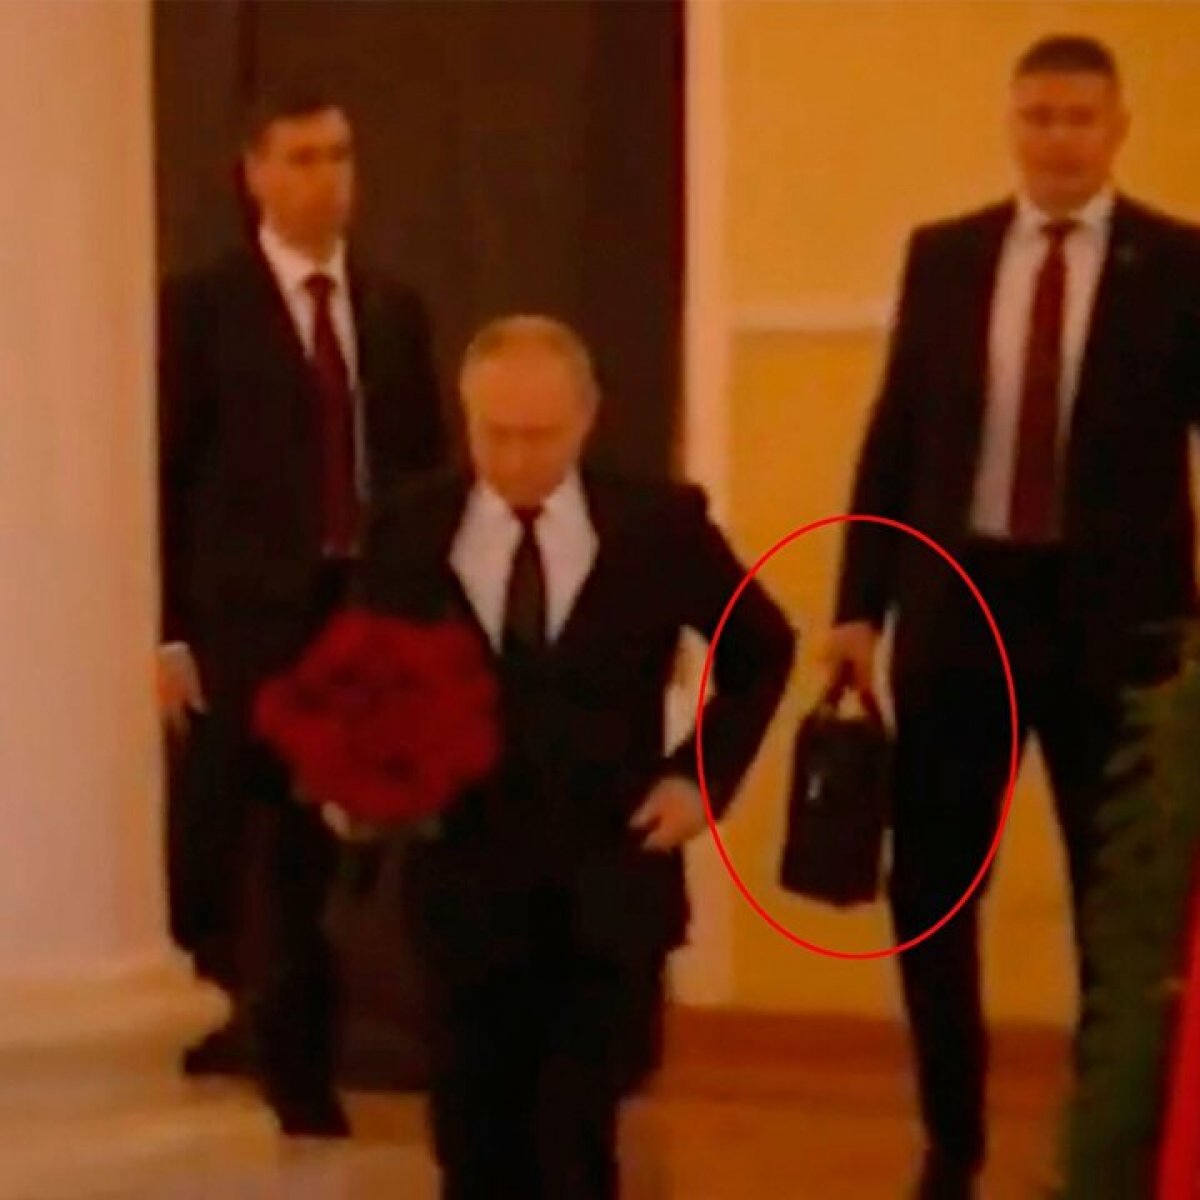 Putin in nükleer çantasını taşıyan albay başından vurulmuş halde bulundu #1